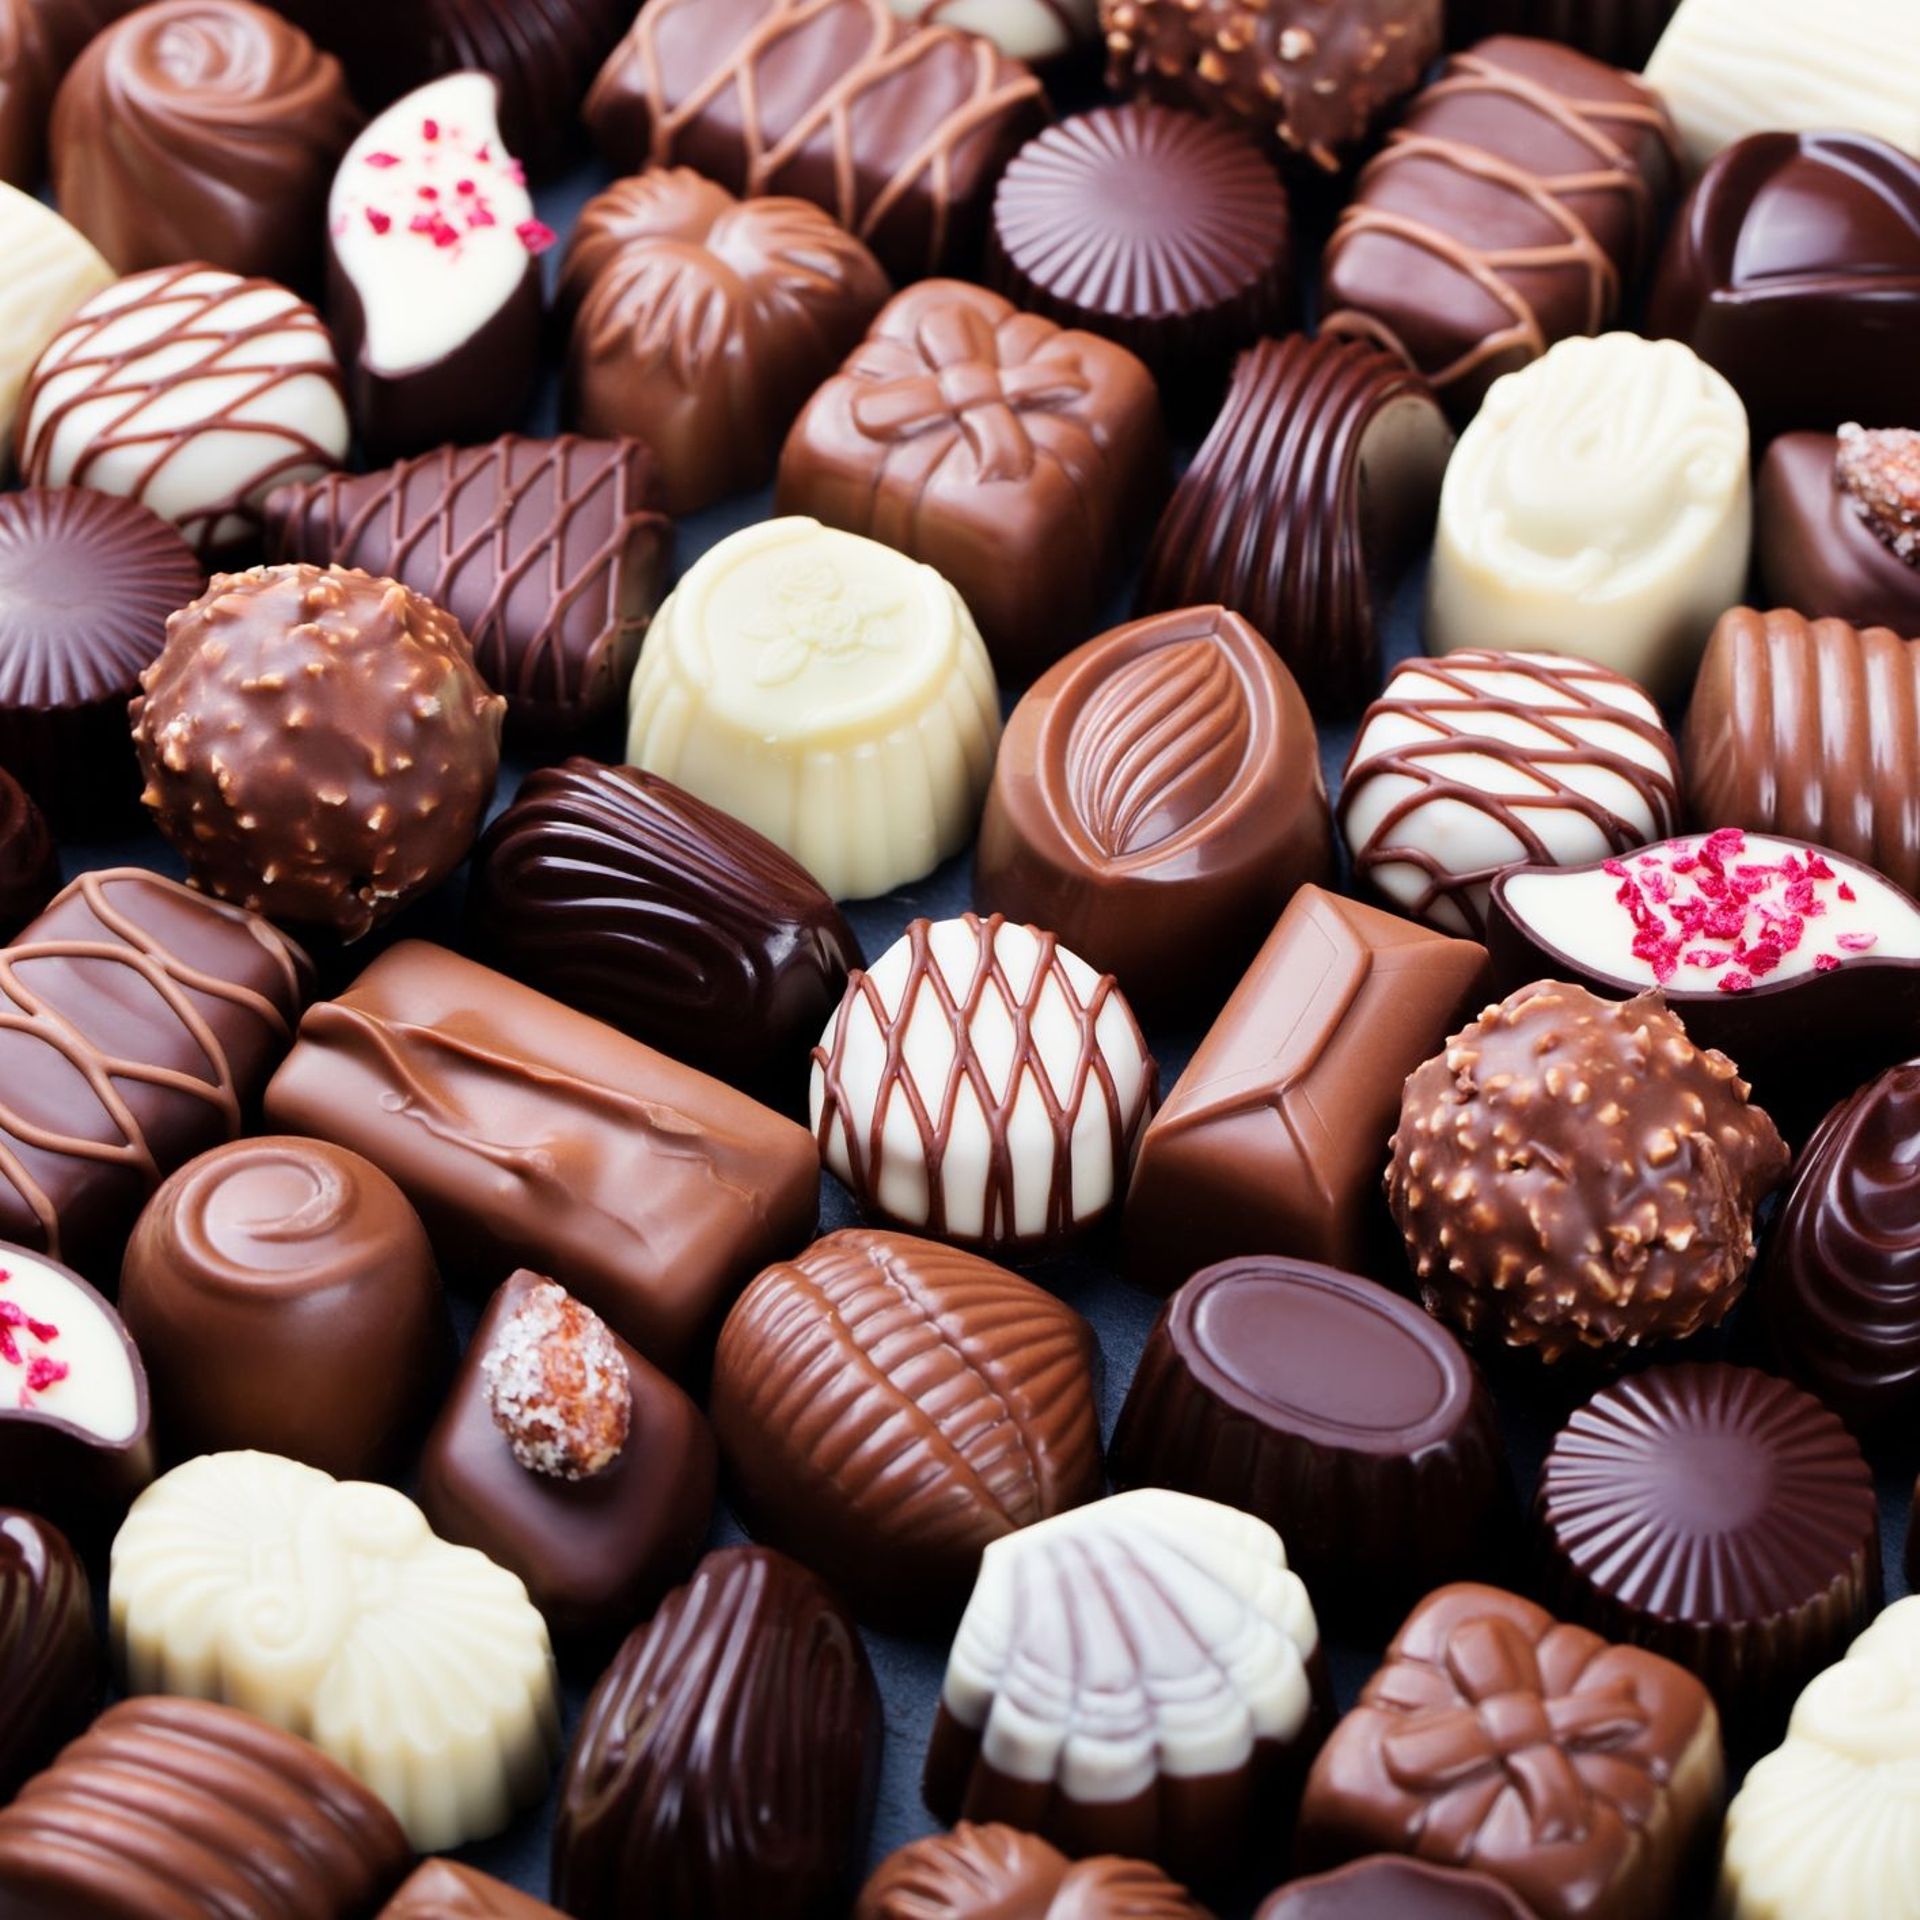 Le chocolat belge : comment est-il parvenu à dominer le marché mondial ? De  la Mésoamérique à l'Europe 